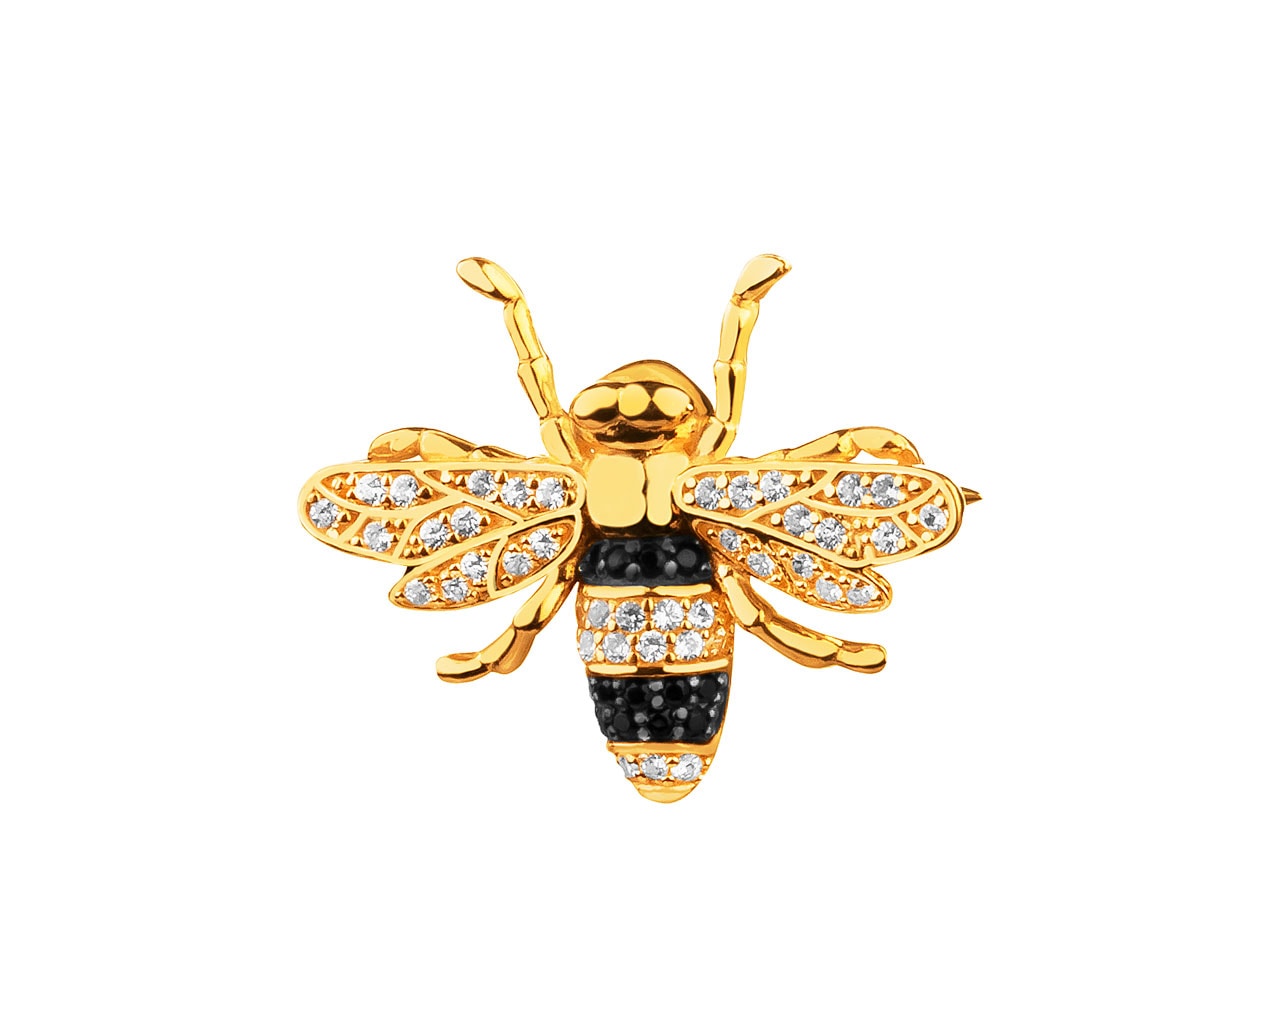 Złota broszka z cyrkoniami - pszczółka